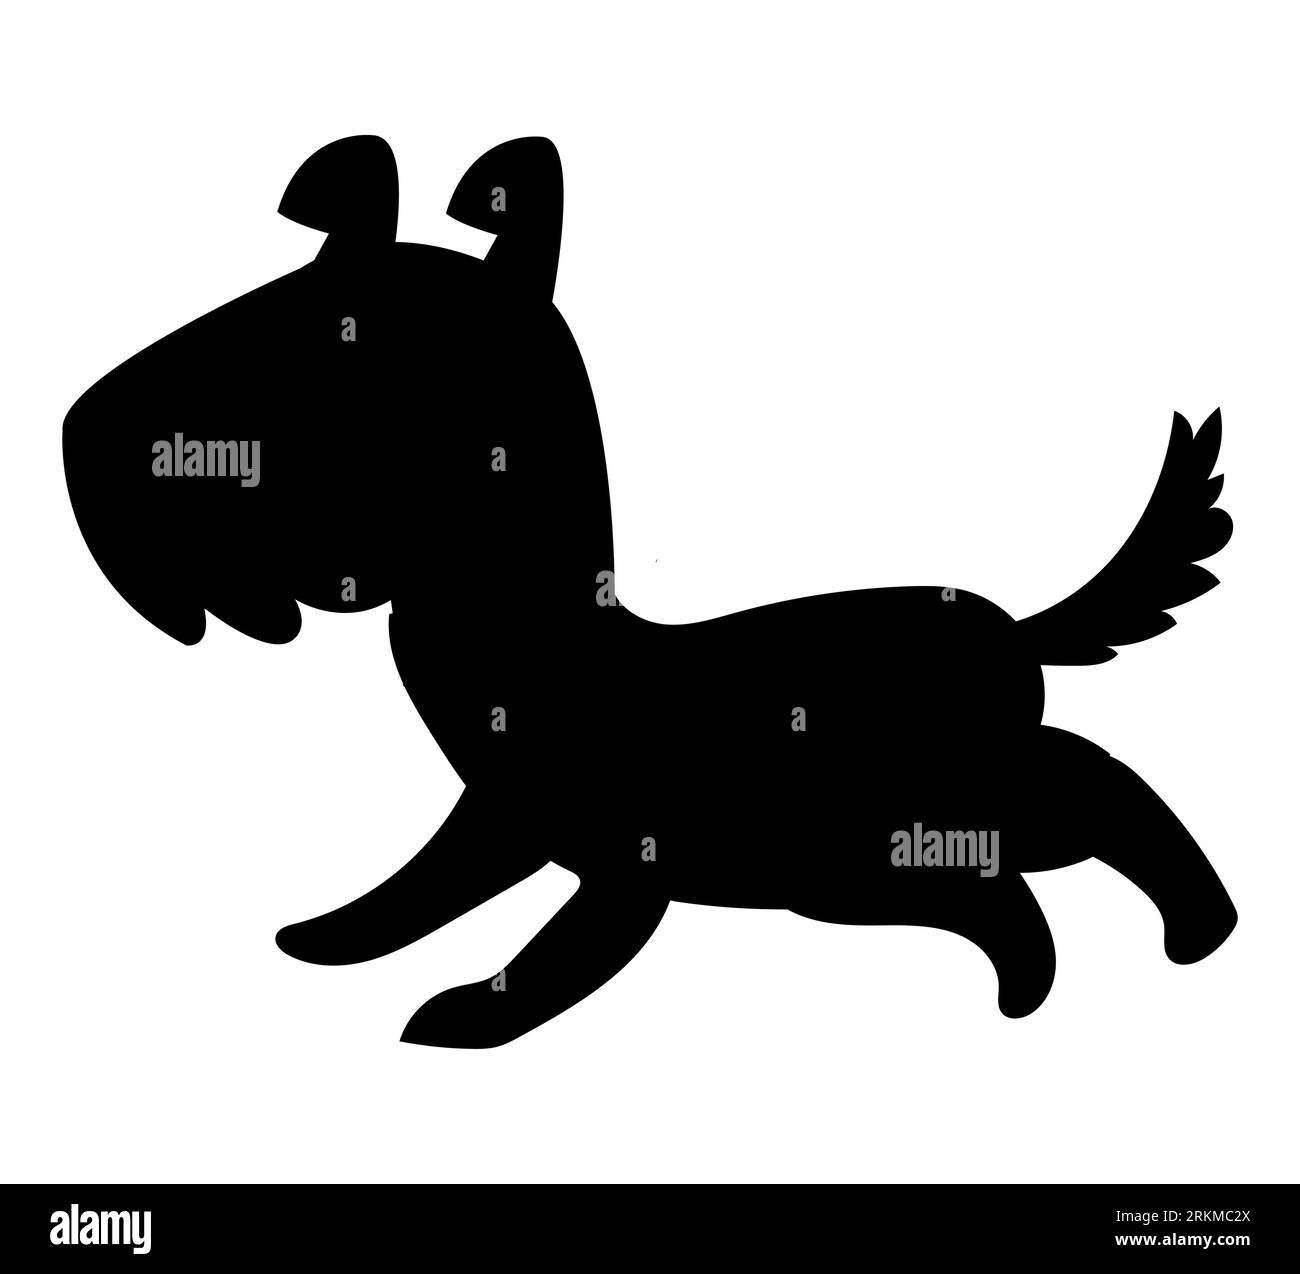 Silhouette noire d'un chiot chien Terrier écossais mignon, vecteur animal isolé sur fond blanc Illustration de Vecteur